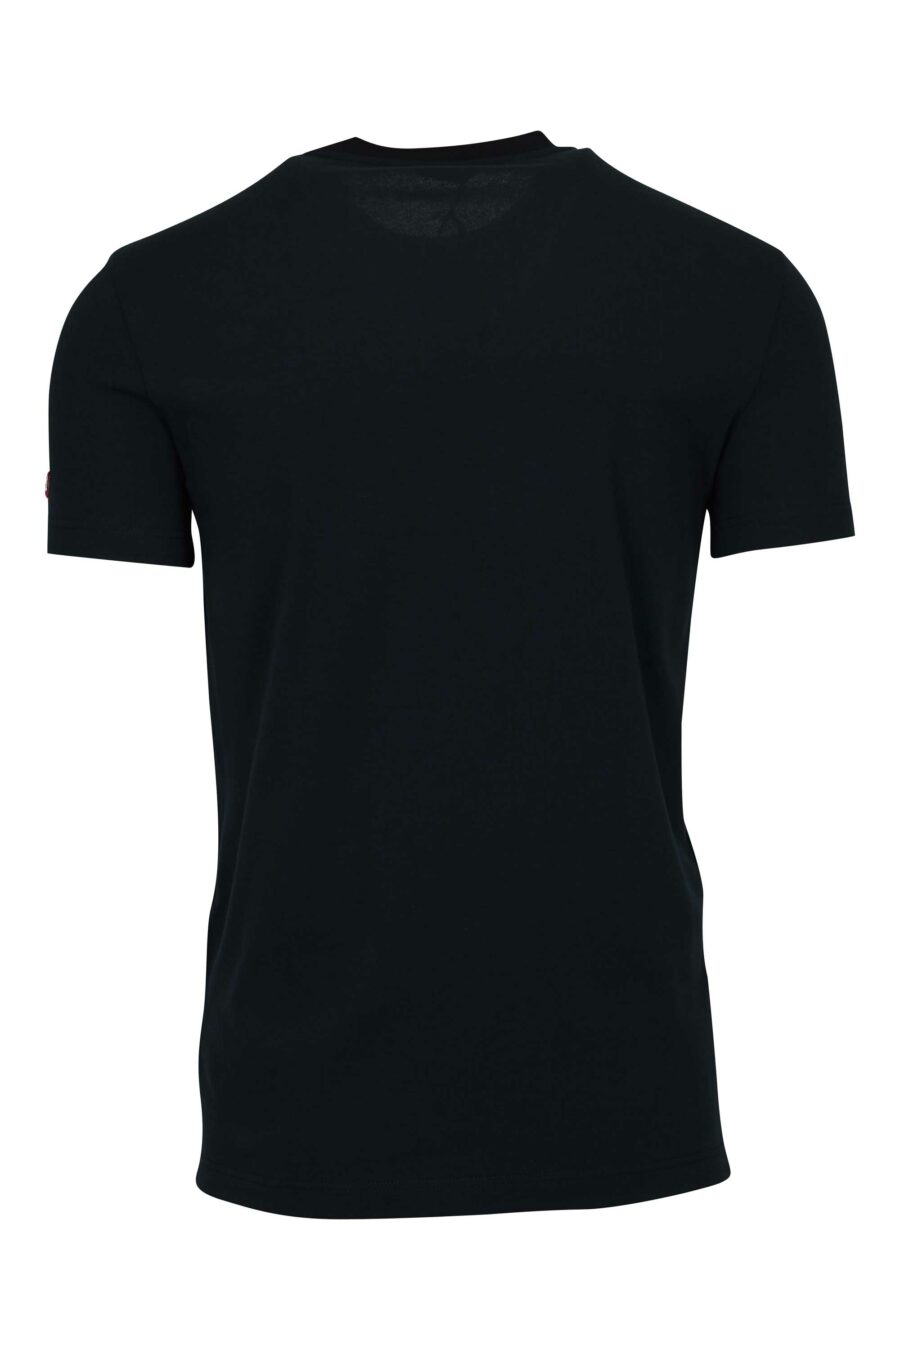 T-shirt noir avec étiquette logo - 8032674811202 1